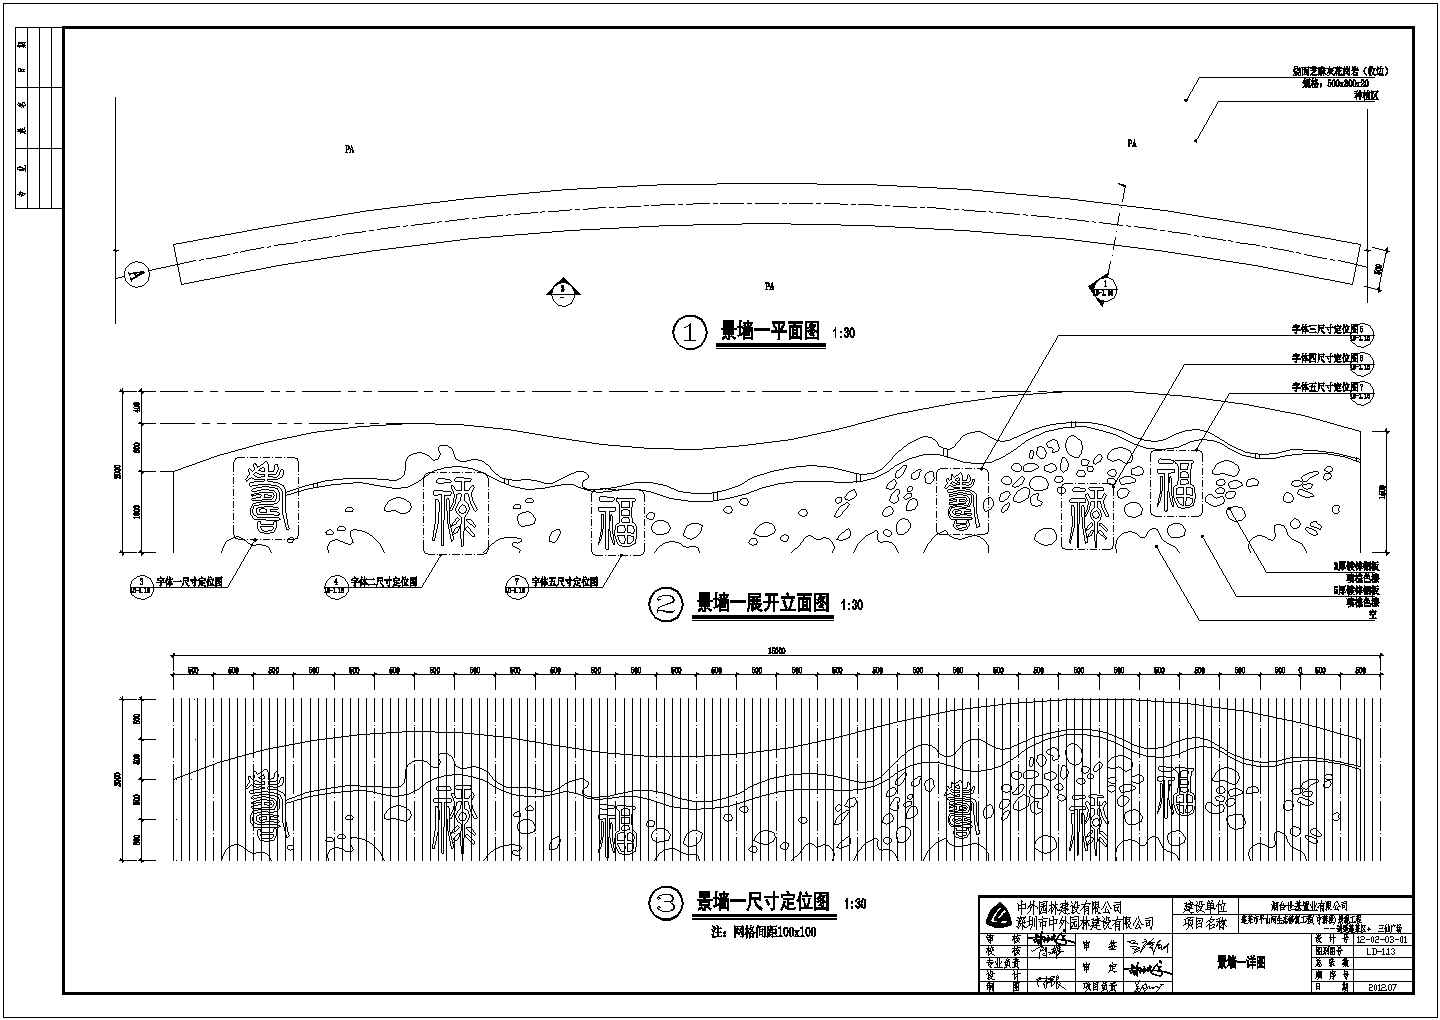 【蓬莱】沿河景观工程广场景墙设计详图